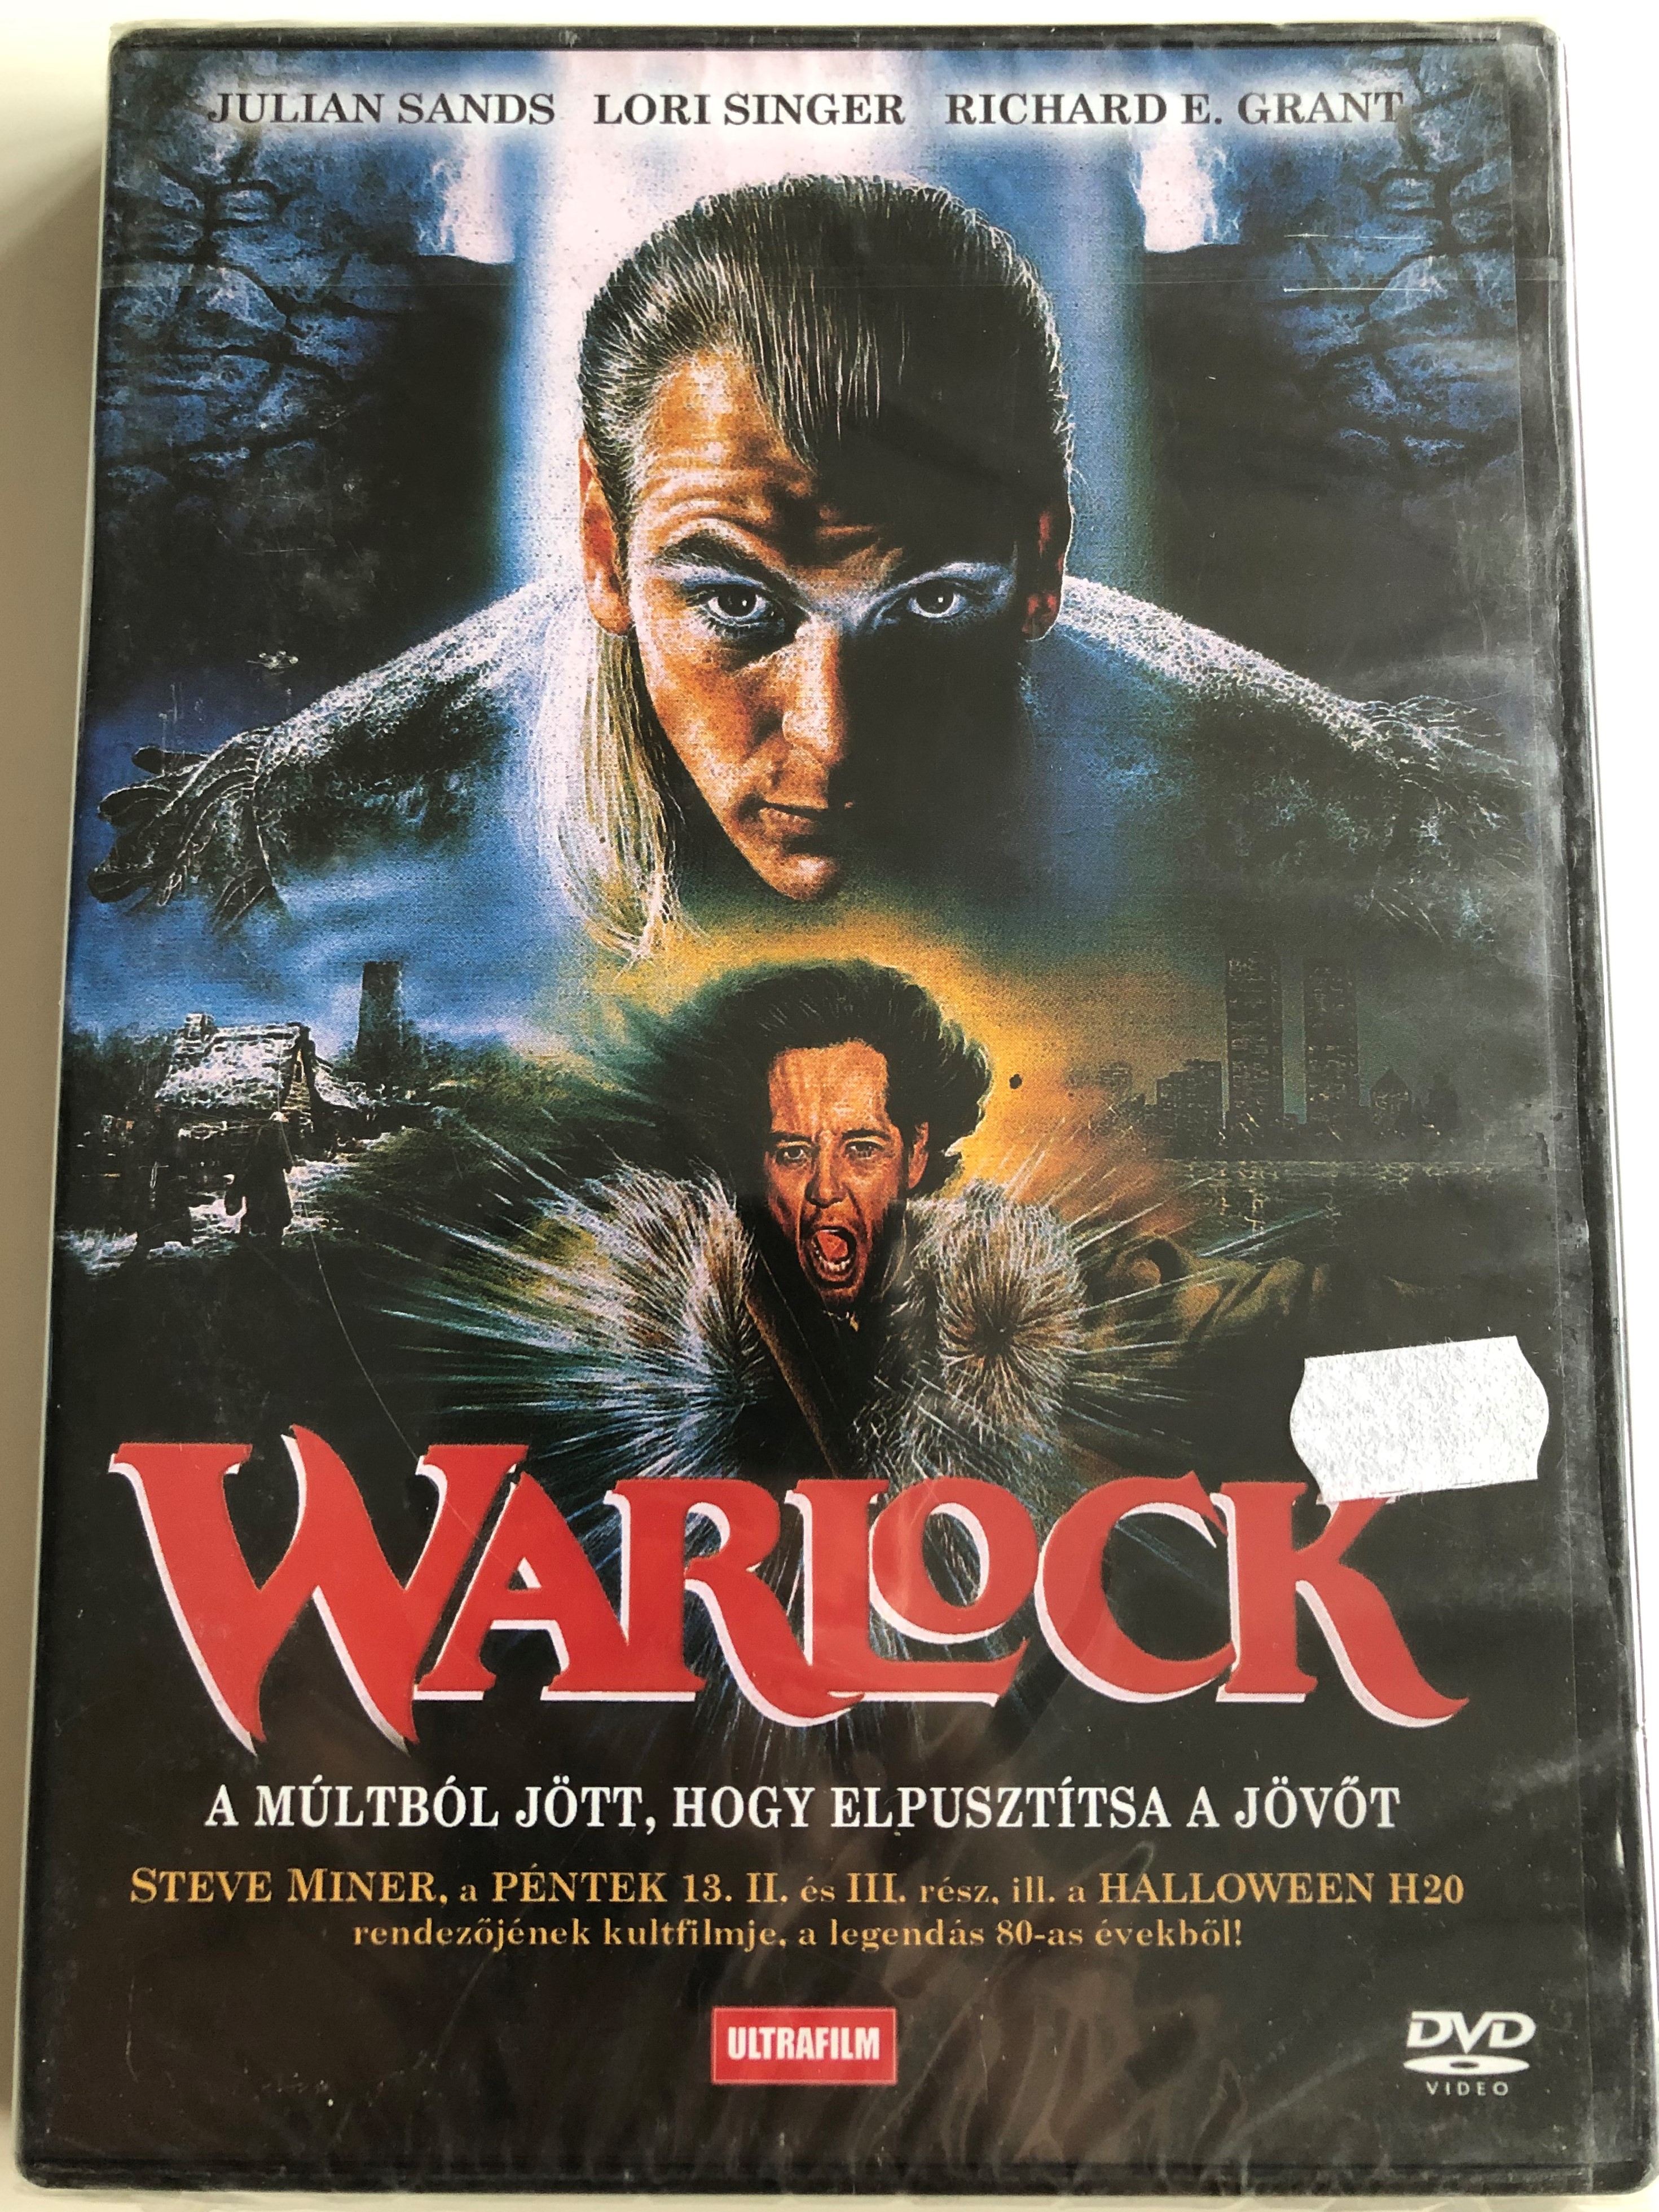 warlock-dvd-1989-a-m-ltb-l-j-tt-hogy-elpuszt-tsa-a-j-v-t-1.jpg